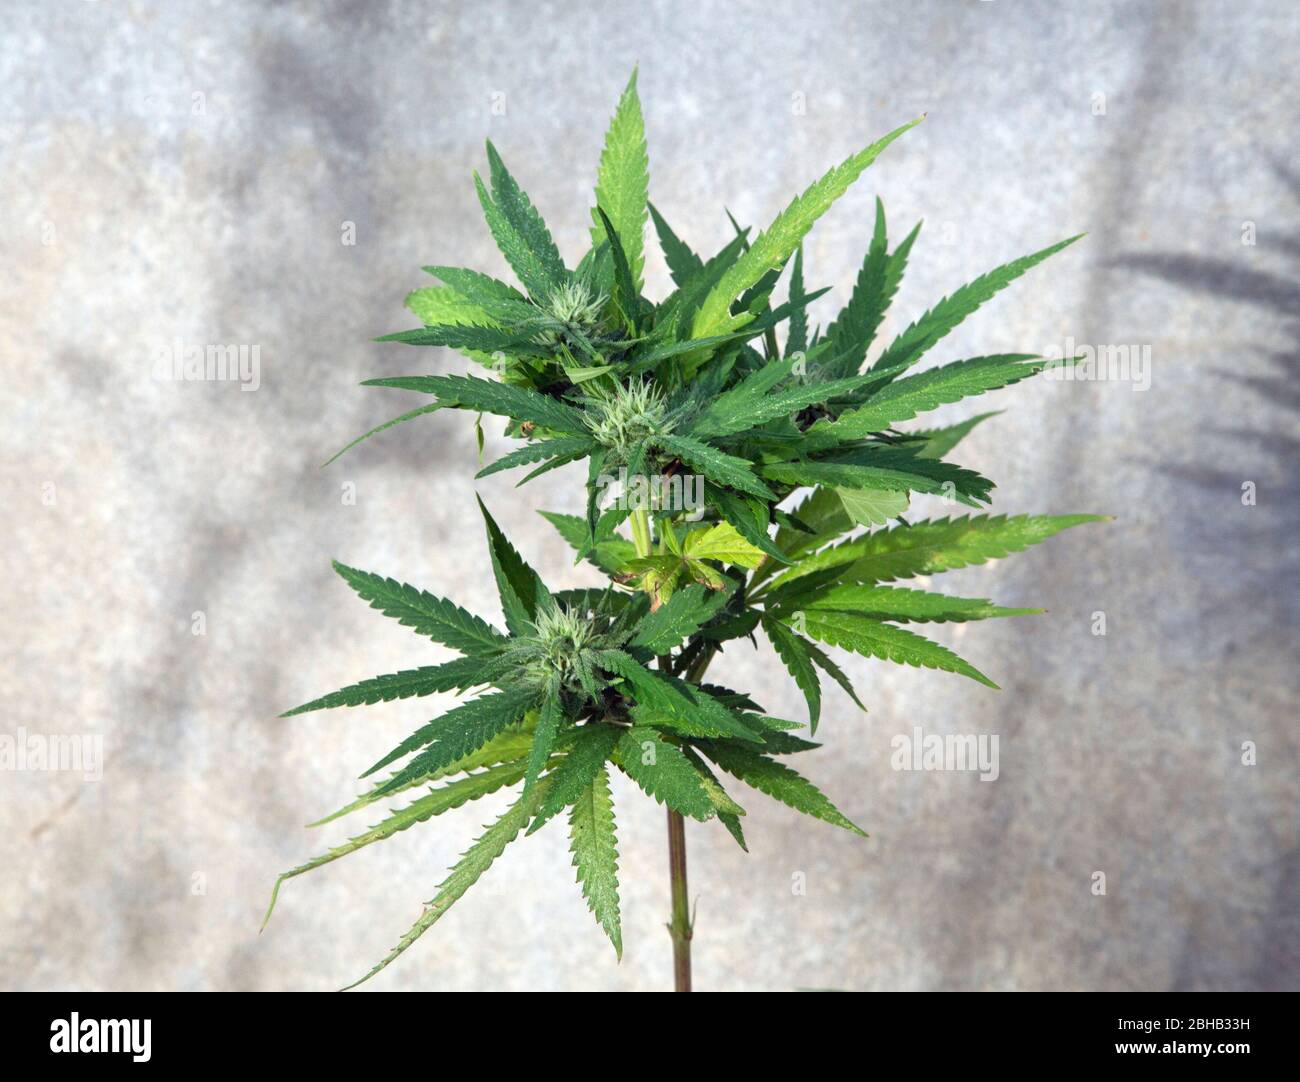 Marijuana (Cannabis sativa) plant. Stock Photo